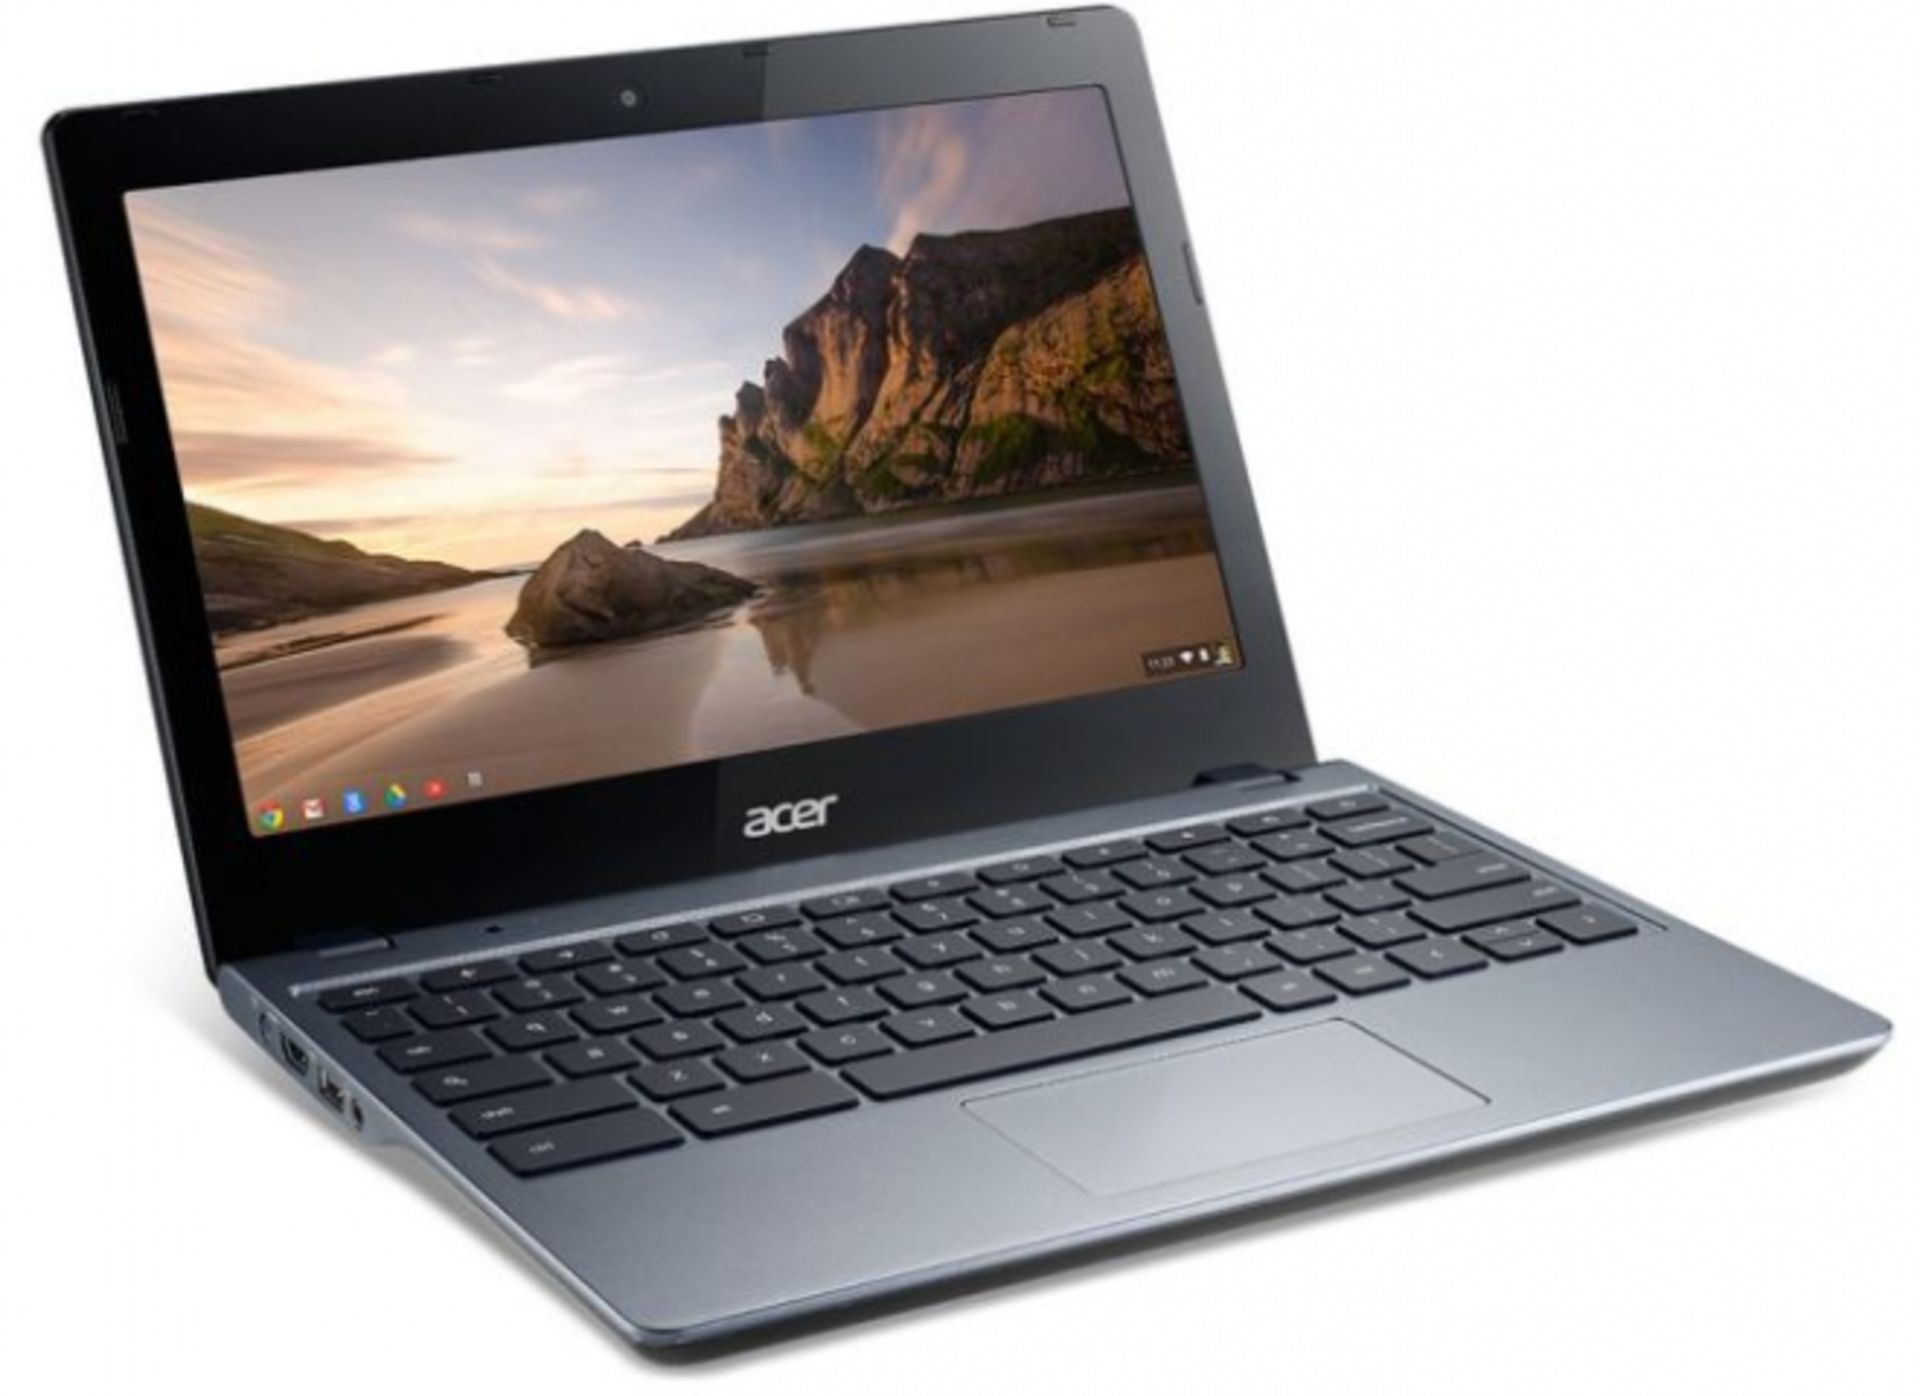 V *TRADE QTY* Grade A Acer Chromebook C730 11.6" Intel HD 2GB 16GB SSD Cel-N2840 ISP £197.98 X 12